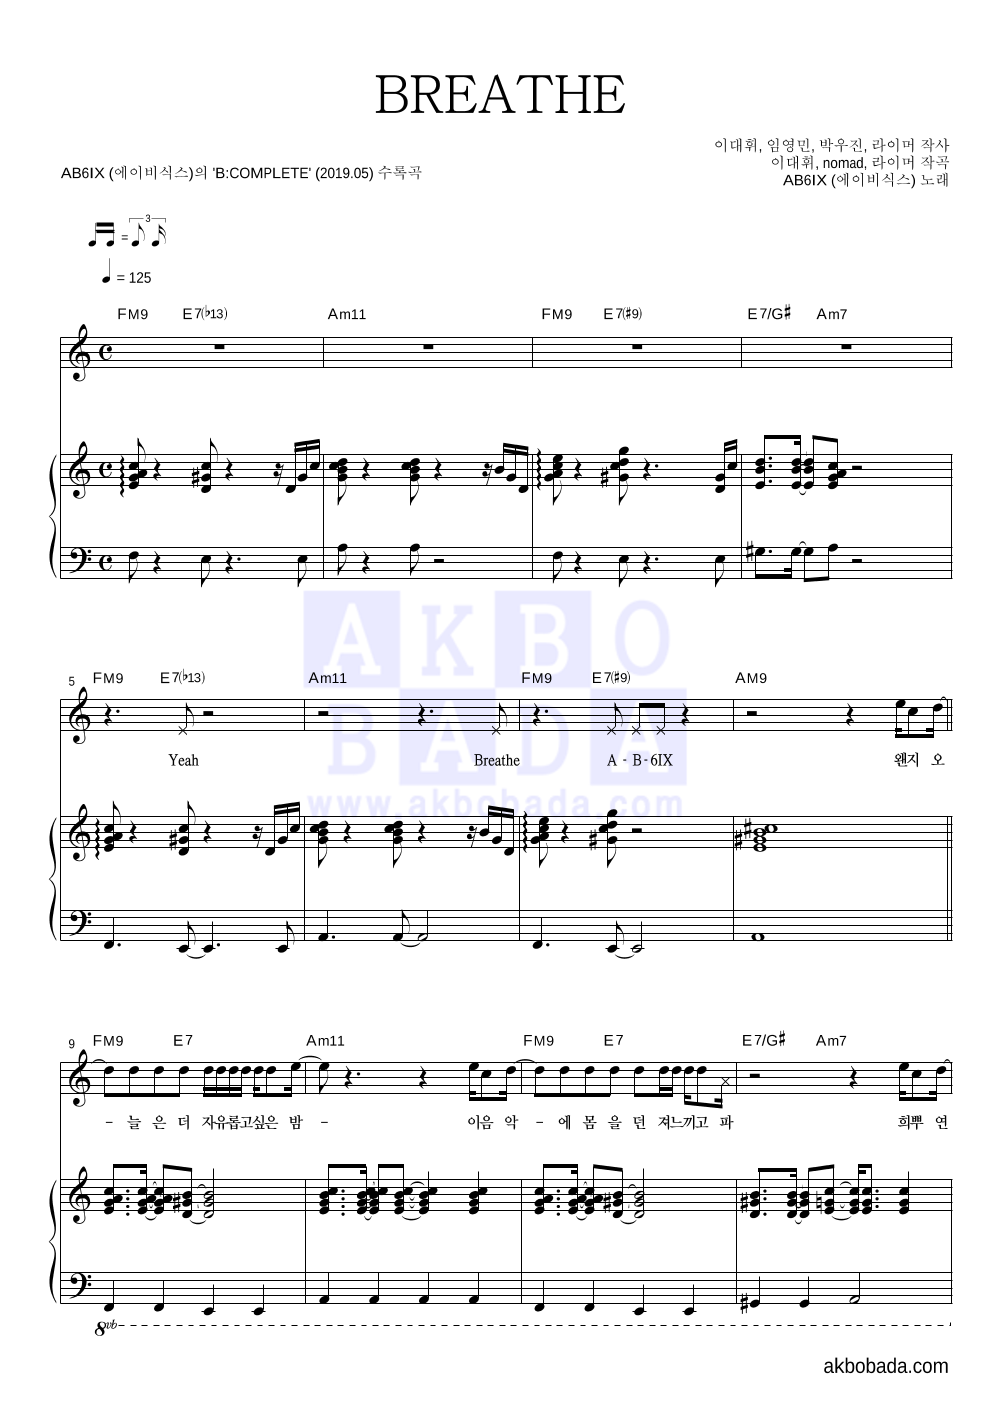 에이비식스 - BREATHE 피아노 3단 악보 